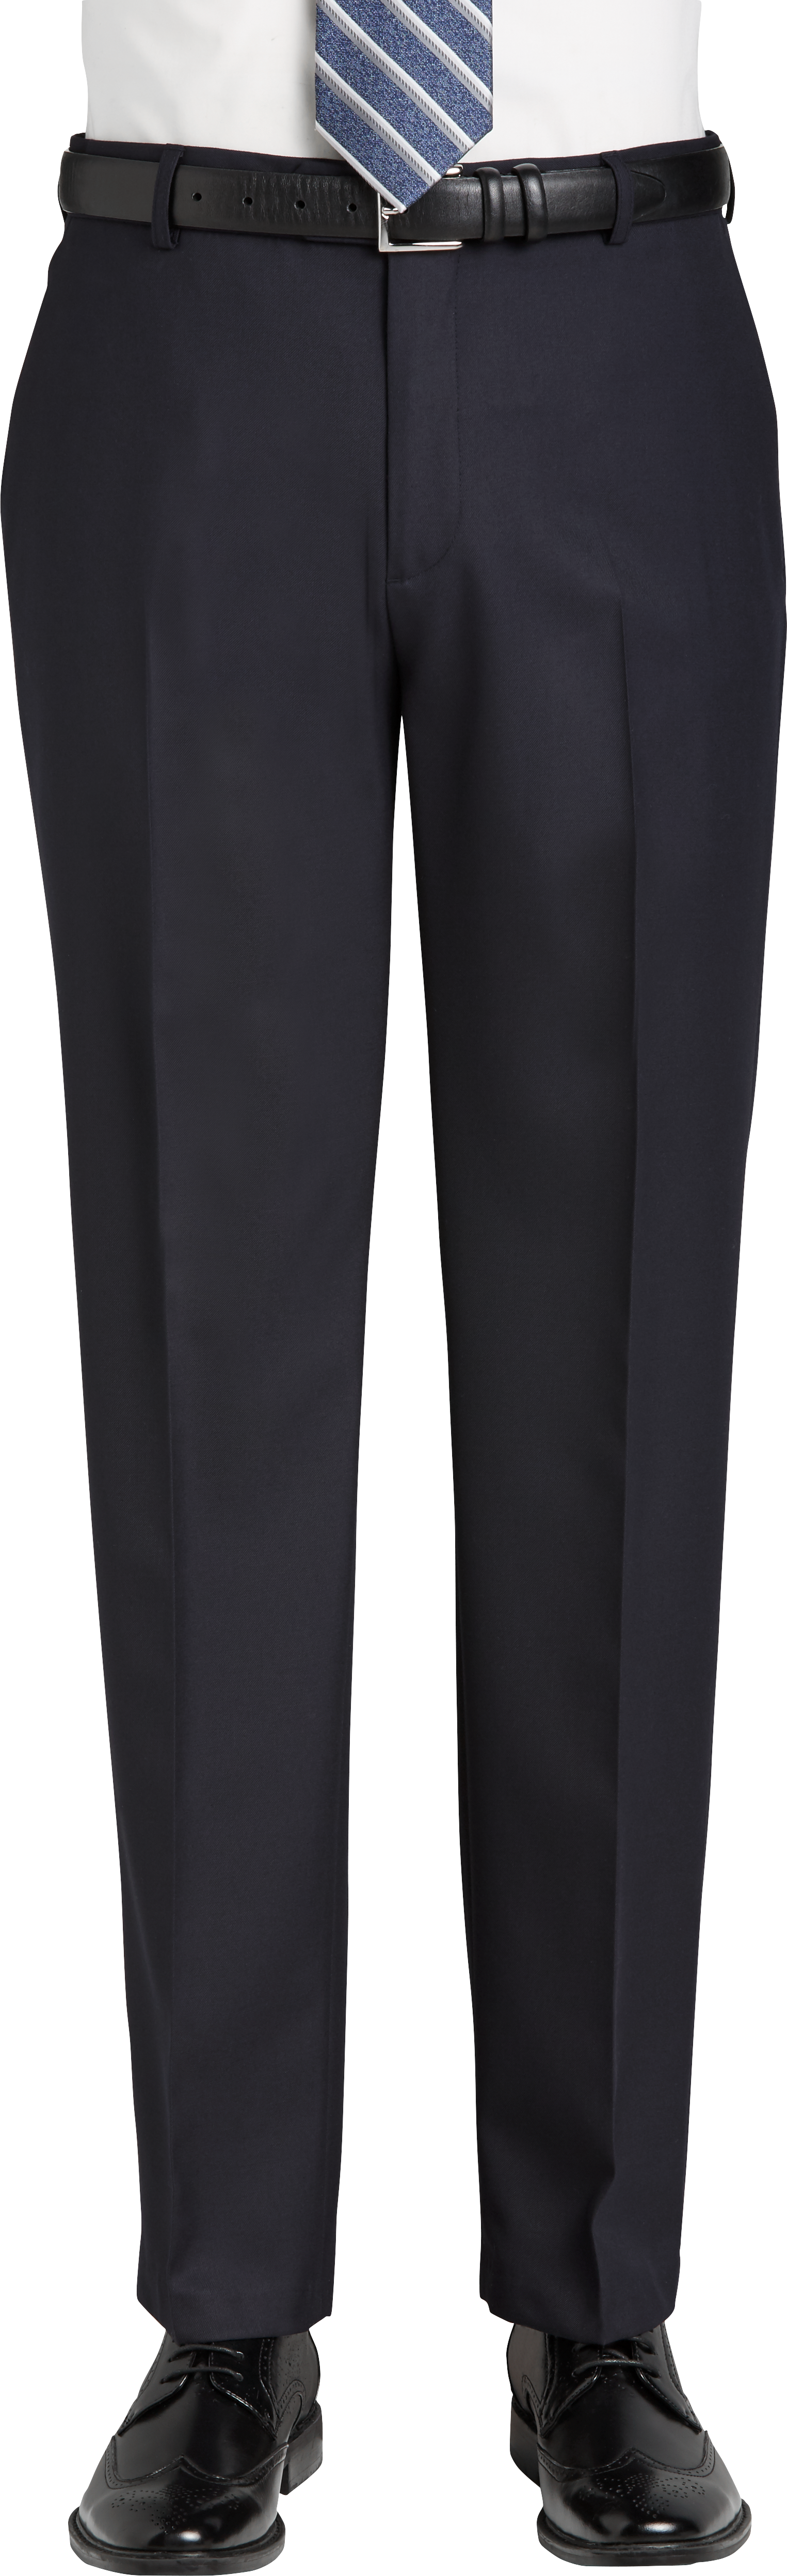 Joseph & Feiss Navy Classic Fit Dress Pants - Men's Sale | Men's Wearhouse